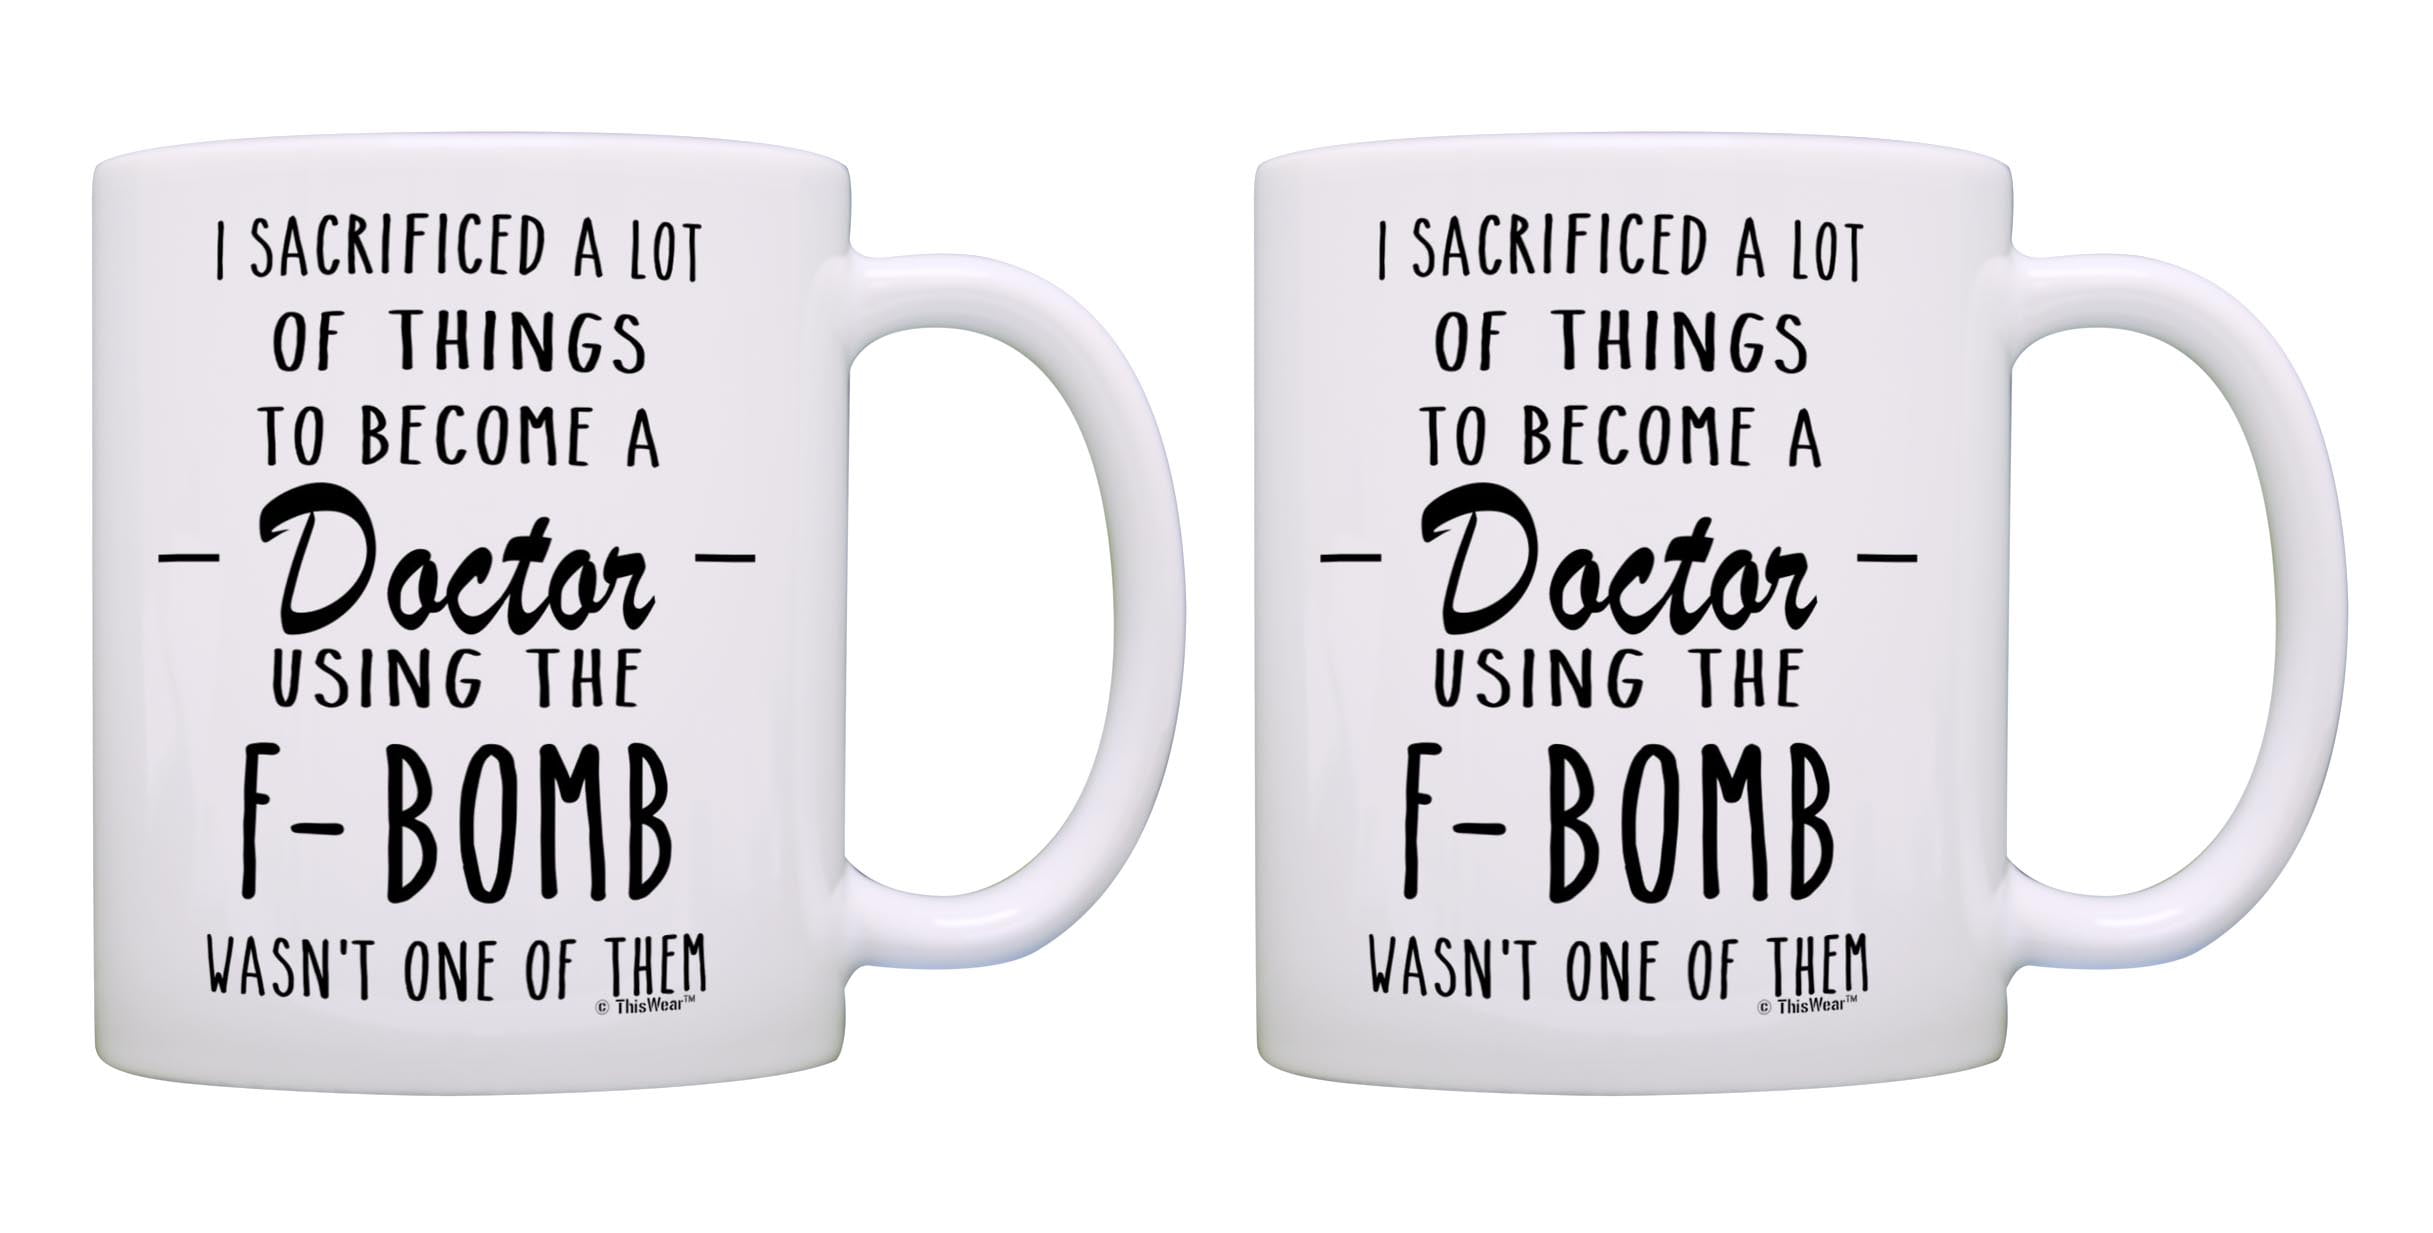 doctor coffee mug mug for physicians